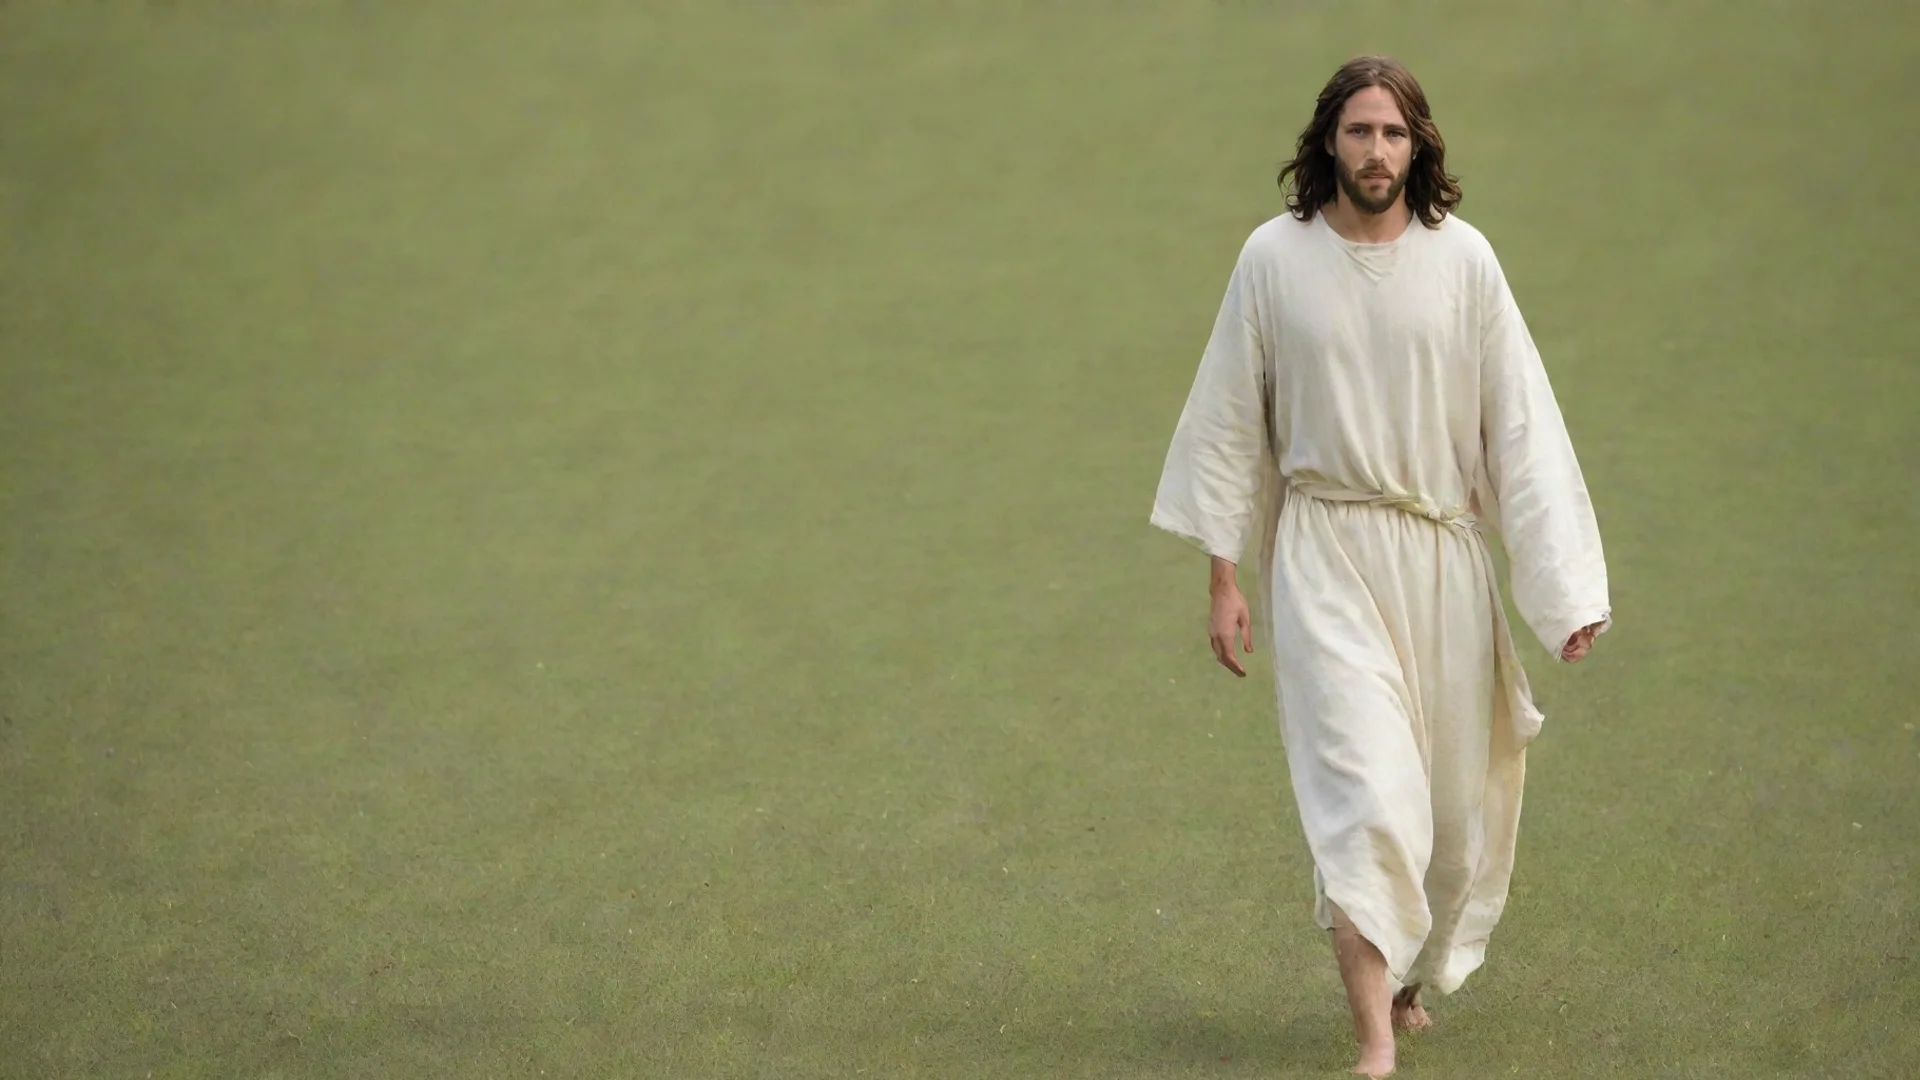 trending jesus walking on field good looking fantastic 1 wide